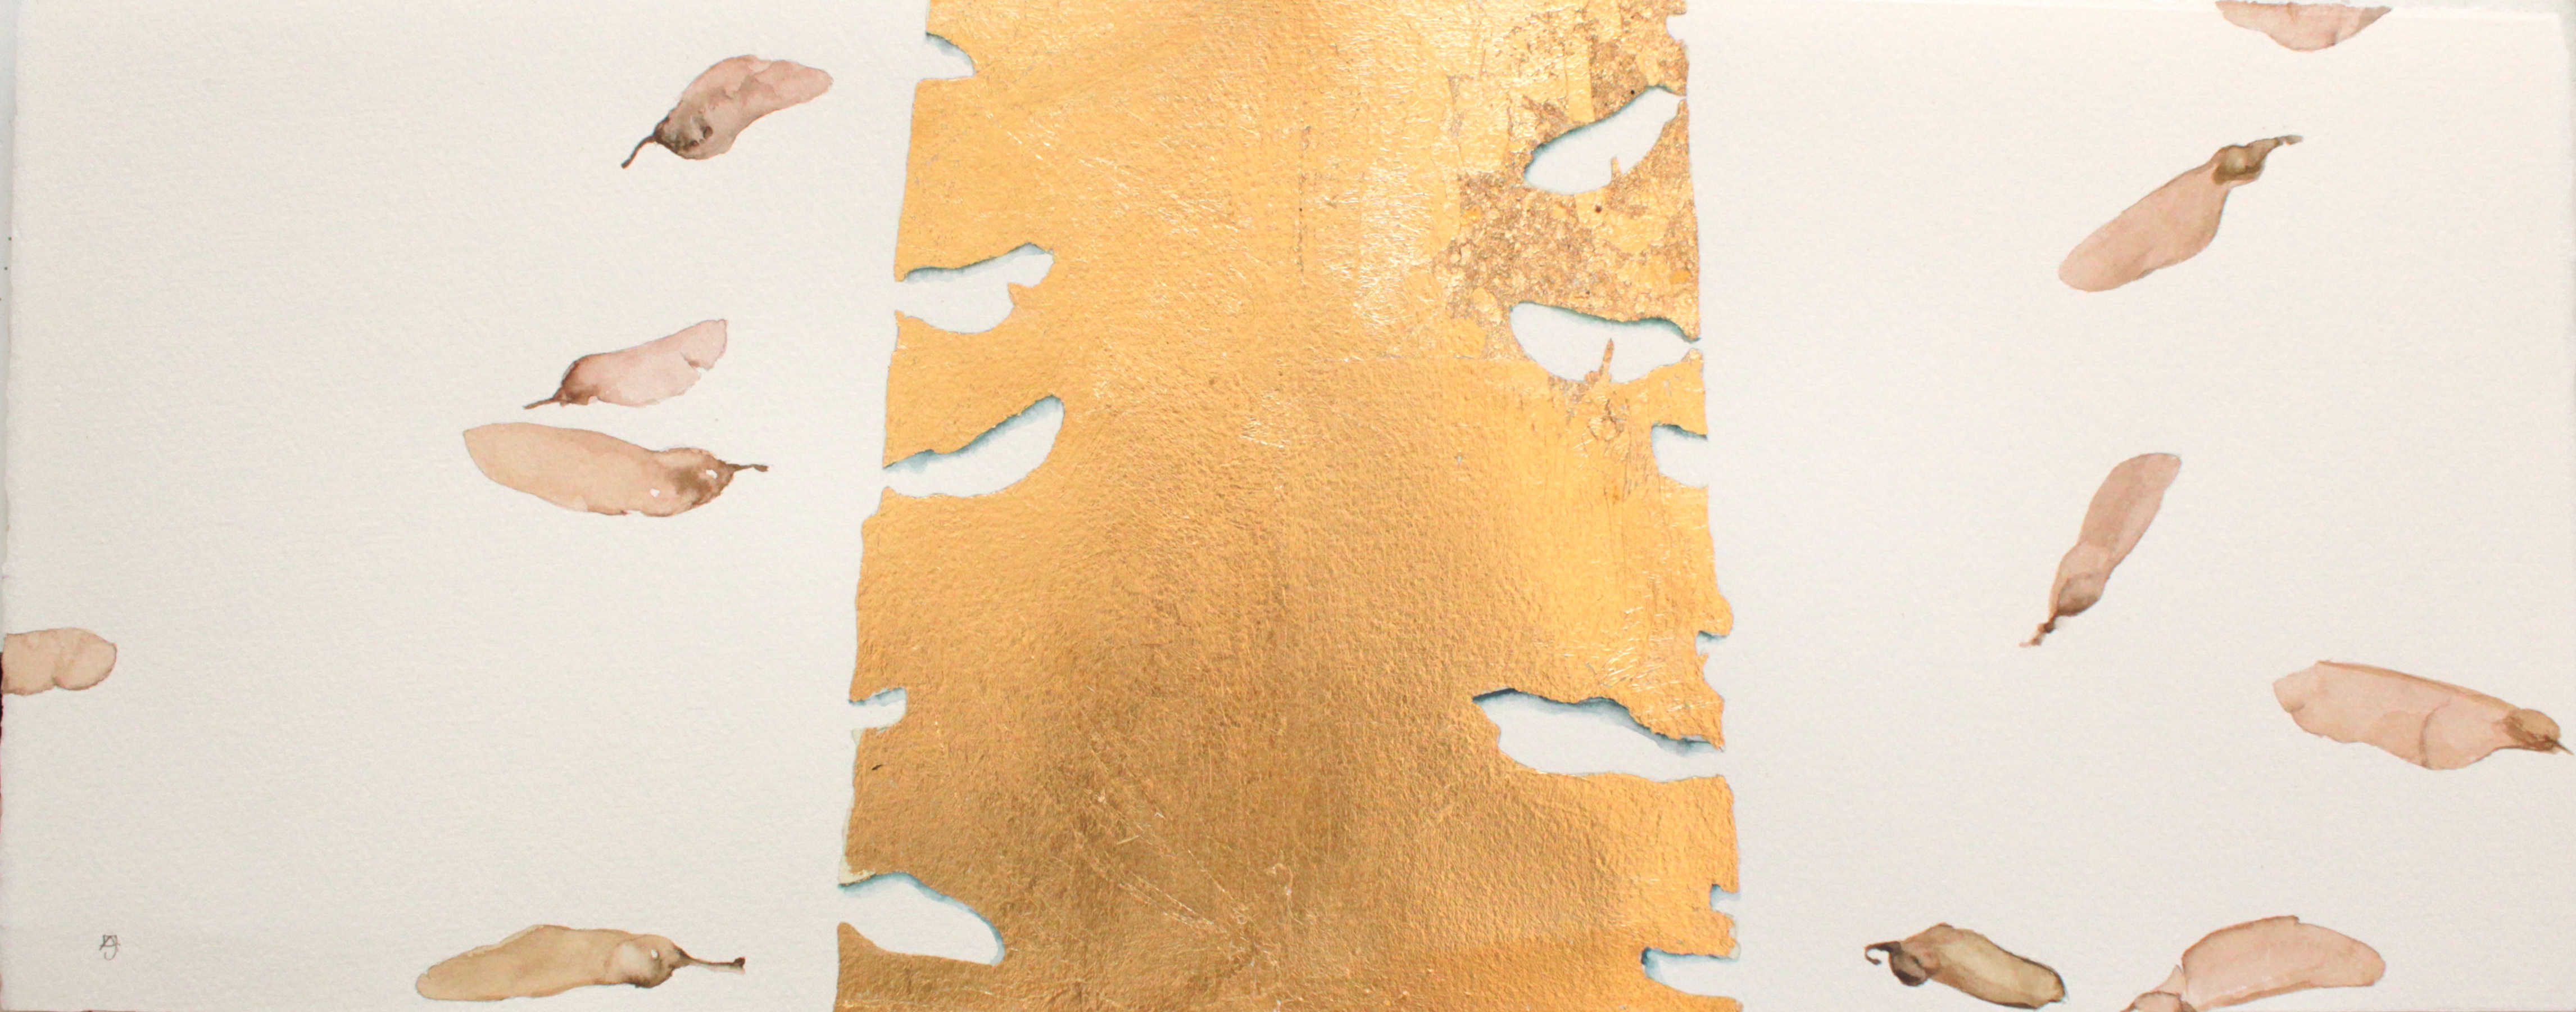 Jose Luis Albelda, Matrices y semillas-1, 2021, Acuarela y pan de oro sobre papel, 20,5 x 52 cm, 800 €